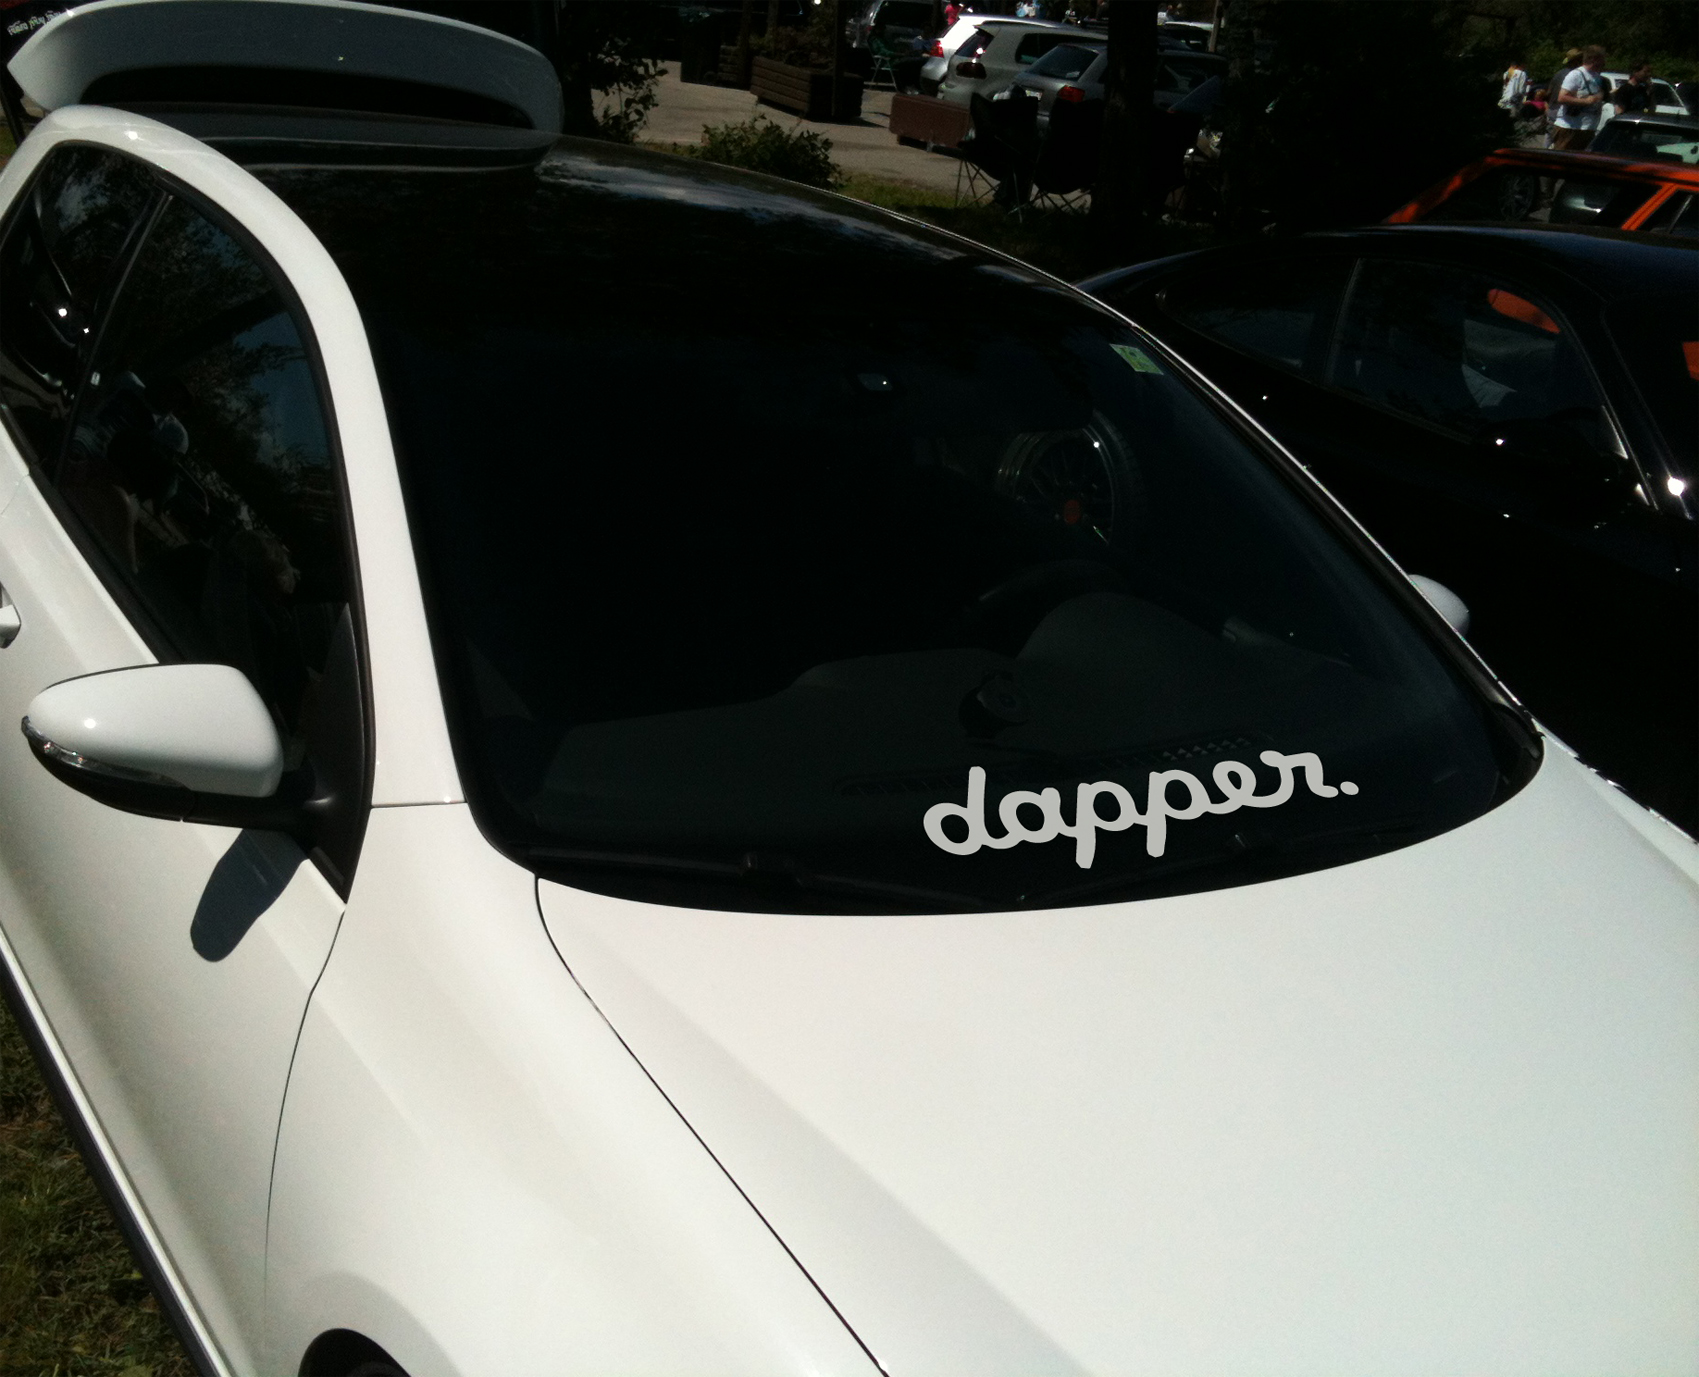 dapper car sticker